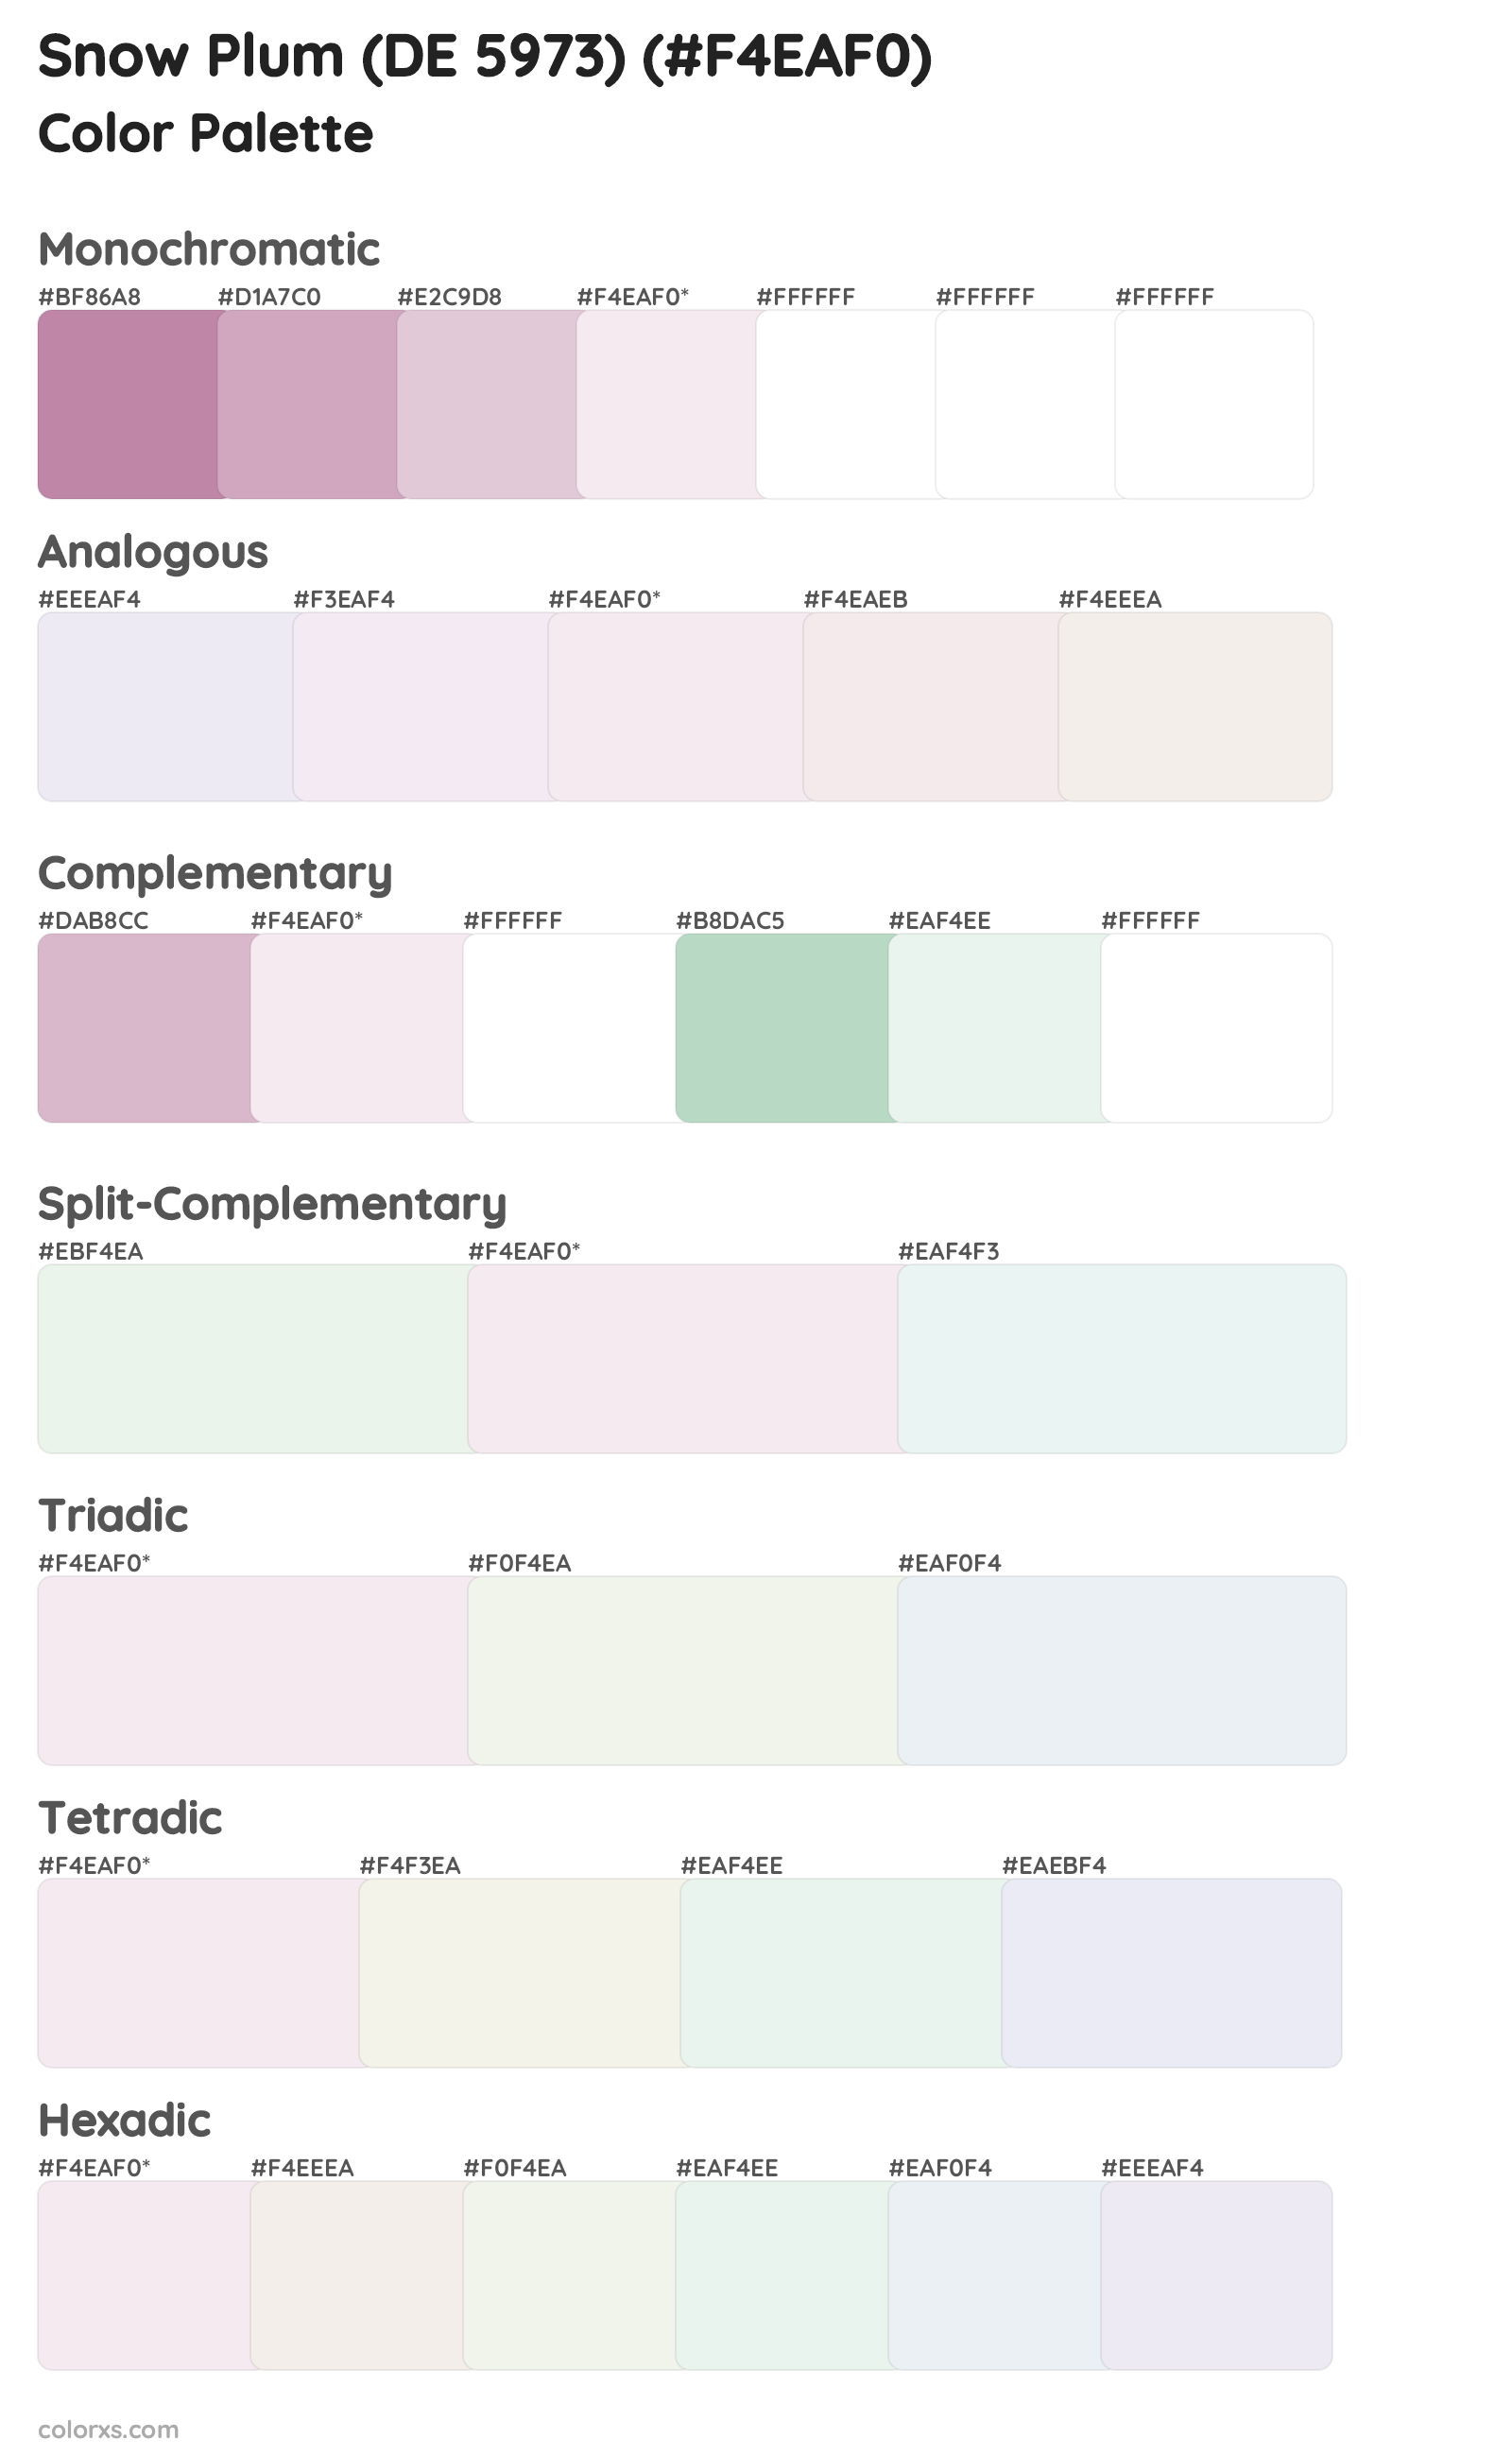 Snow Plum (DE 5973) Color Scheme Palettes